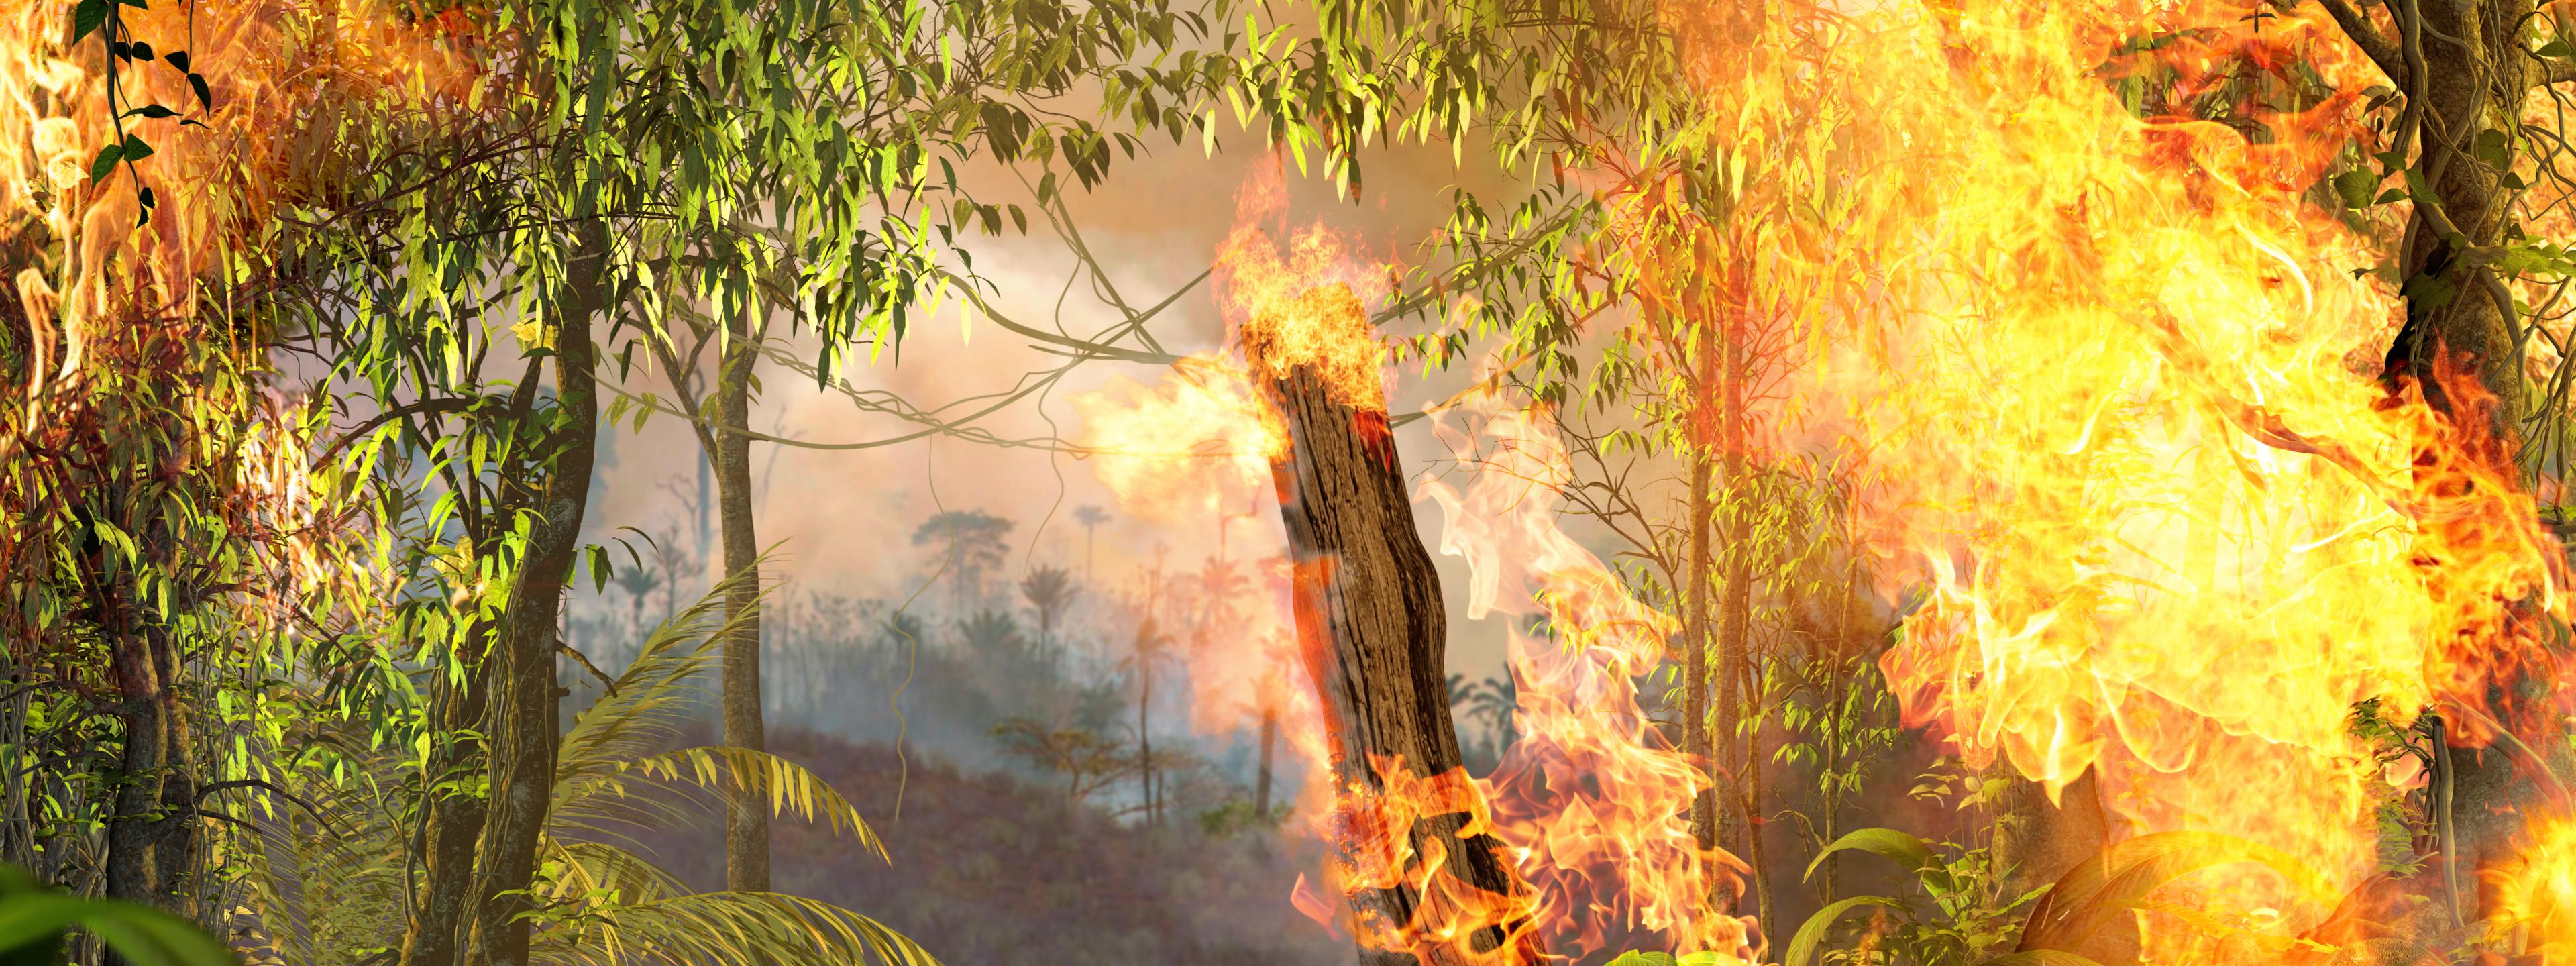 Brandstiftung treibt die Entwaldung im Amazonas-Regenwald in Brasilien voran. (Symbolbild)